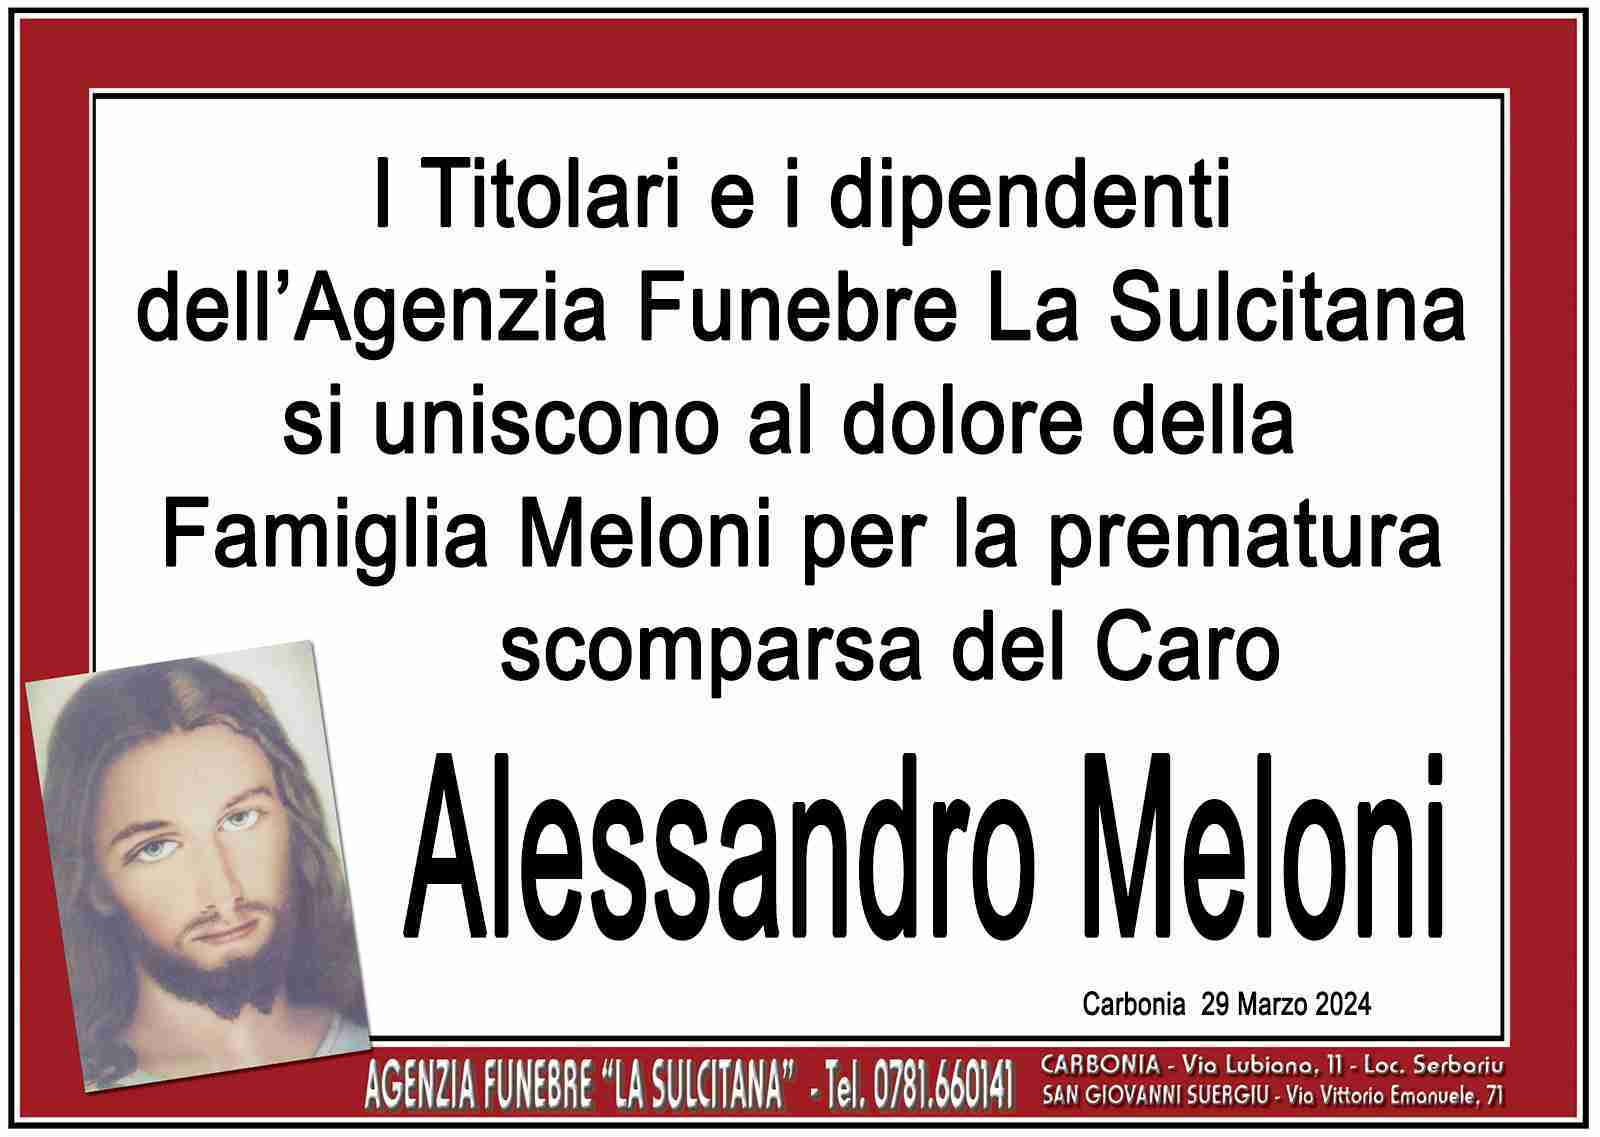 Alessandro Meloni